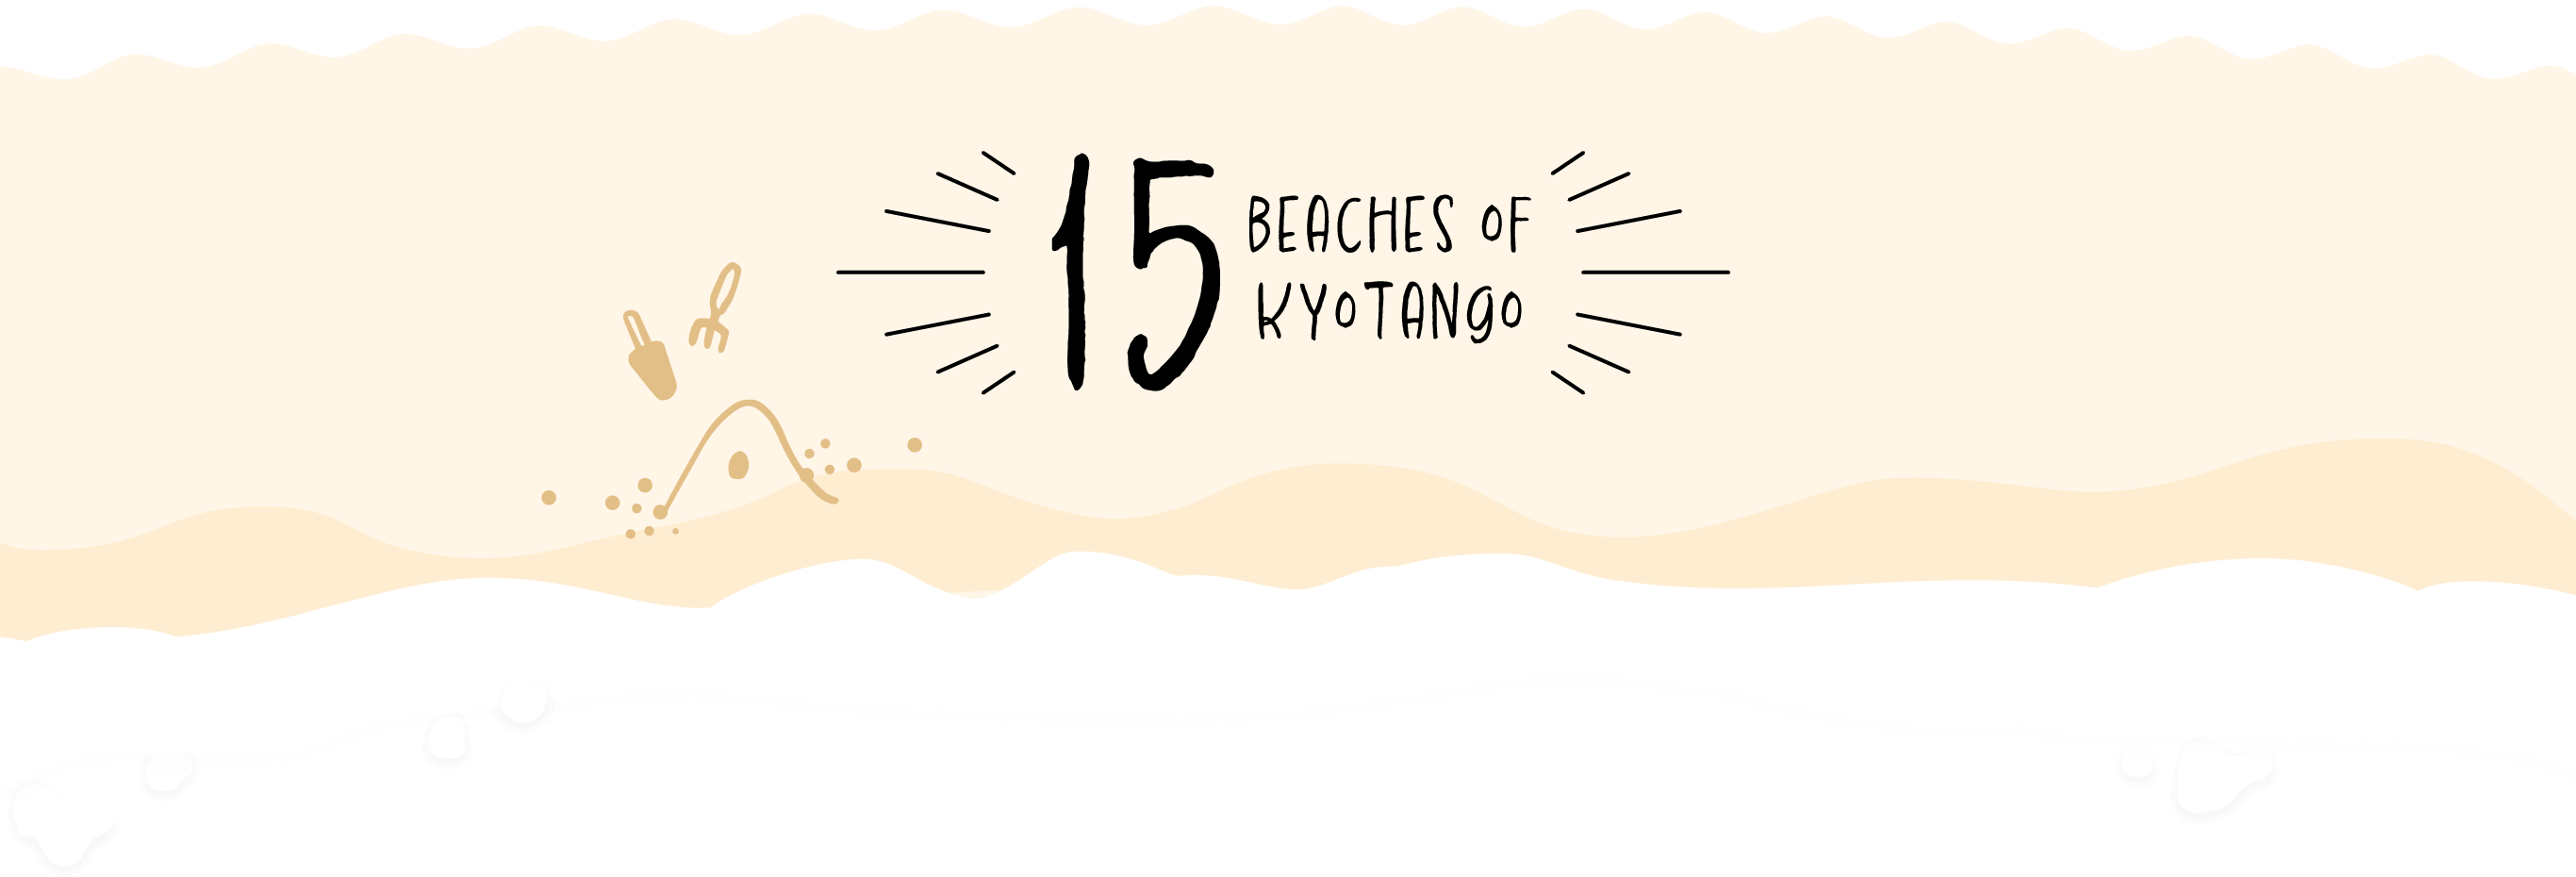 Beaches of Kyotango